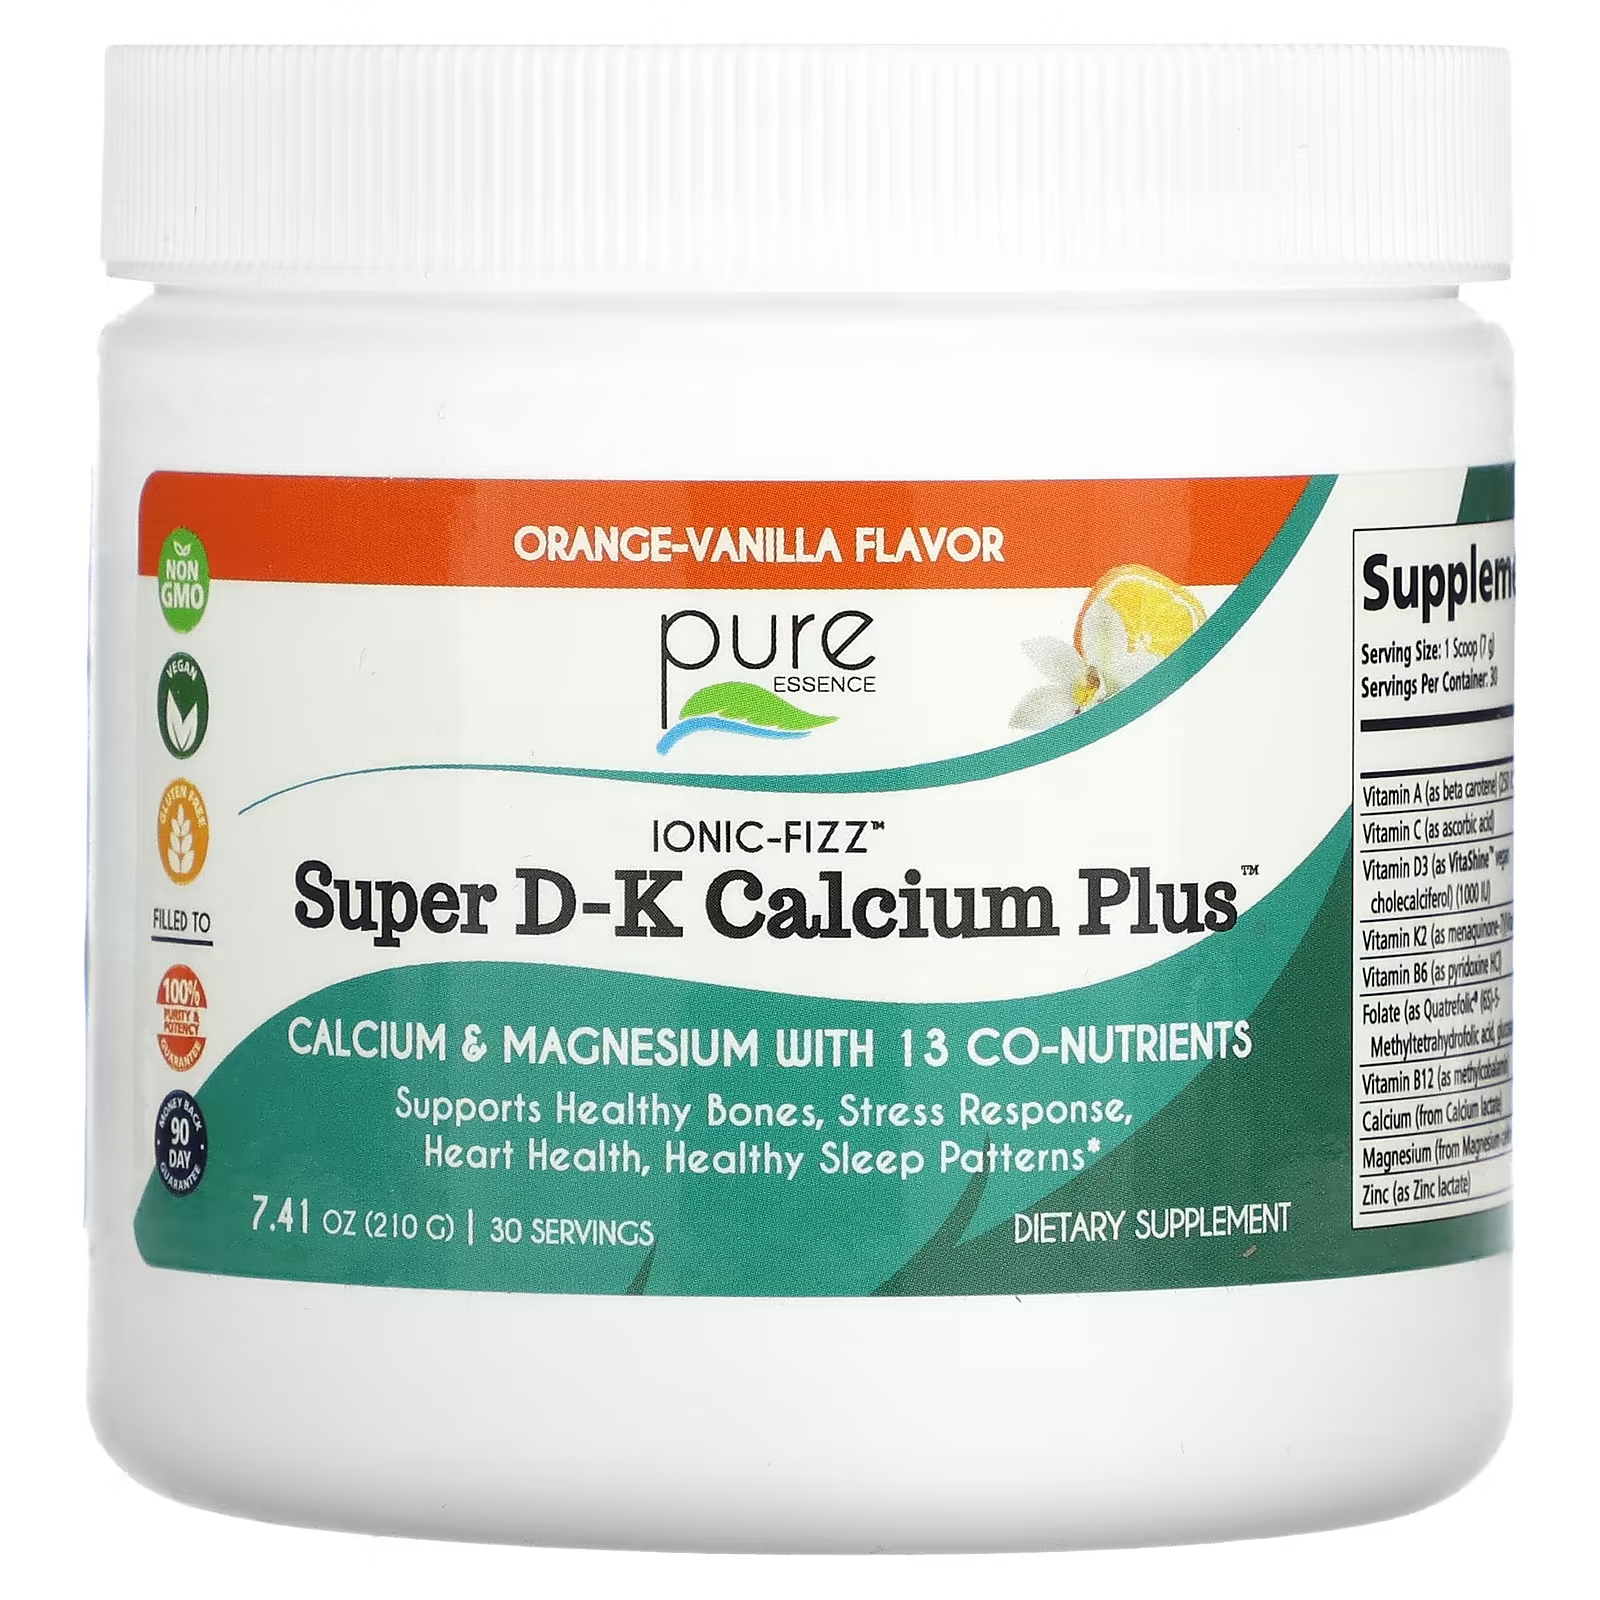 Пищевая добавка Pure Essence Ionic-Fizz Super DK Calcium Plus апельсин-ваниль, 210 г